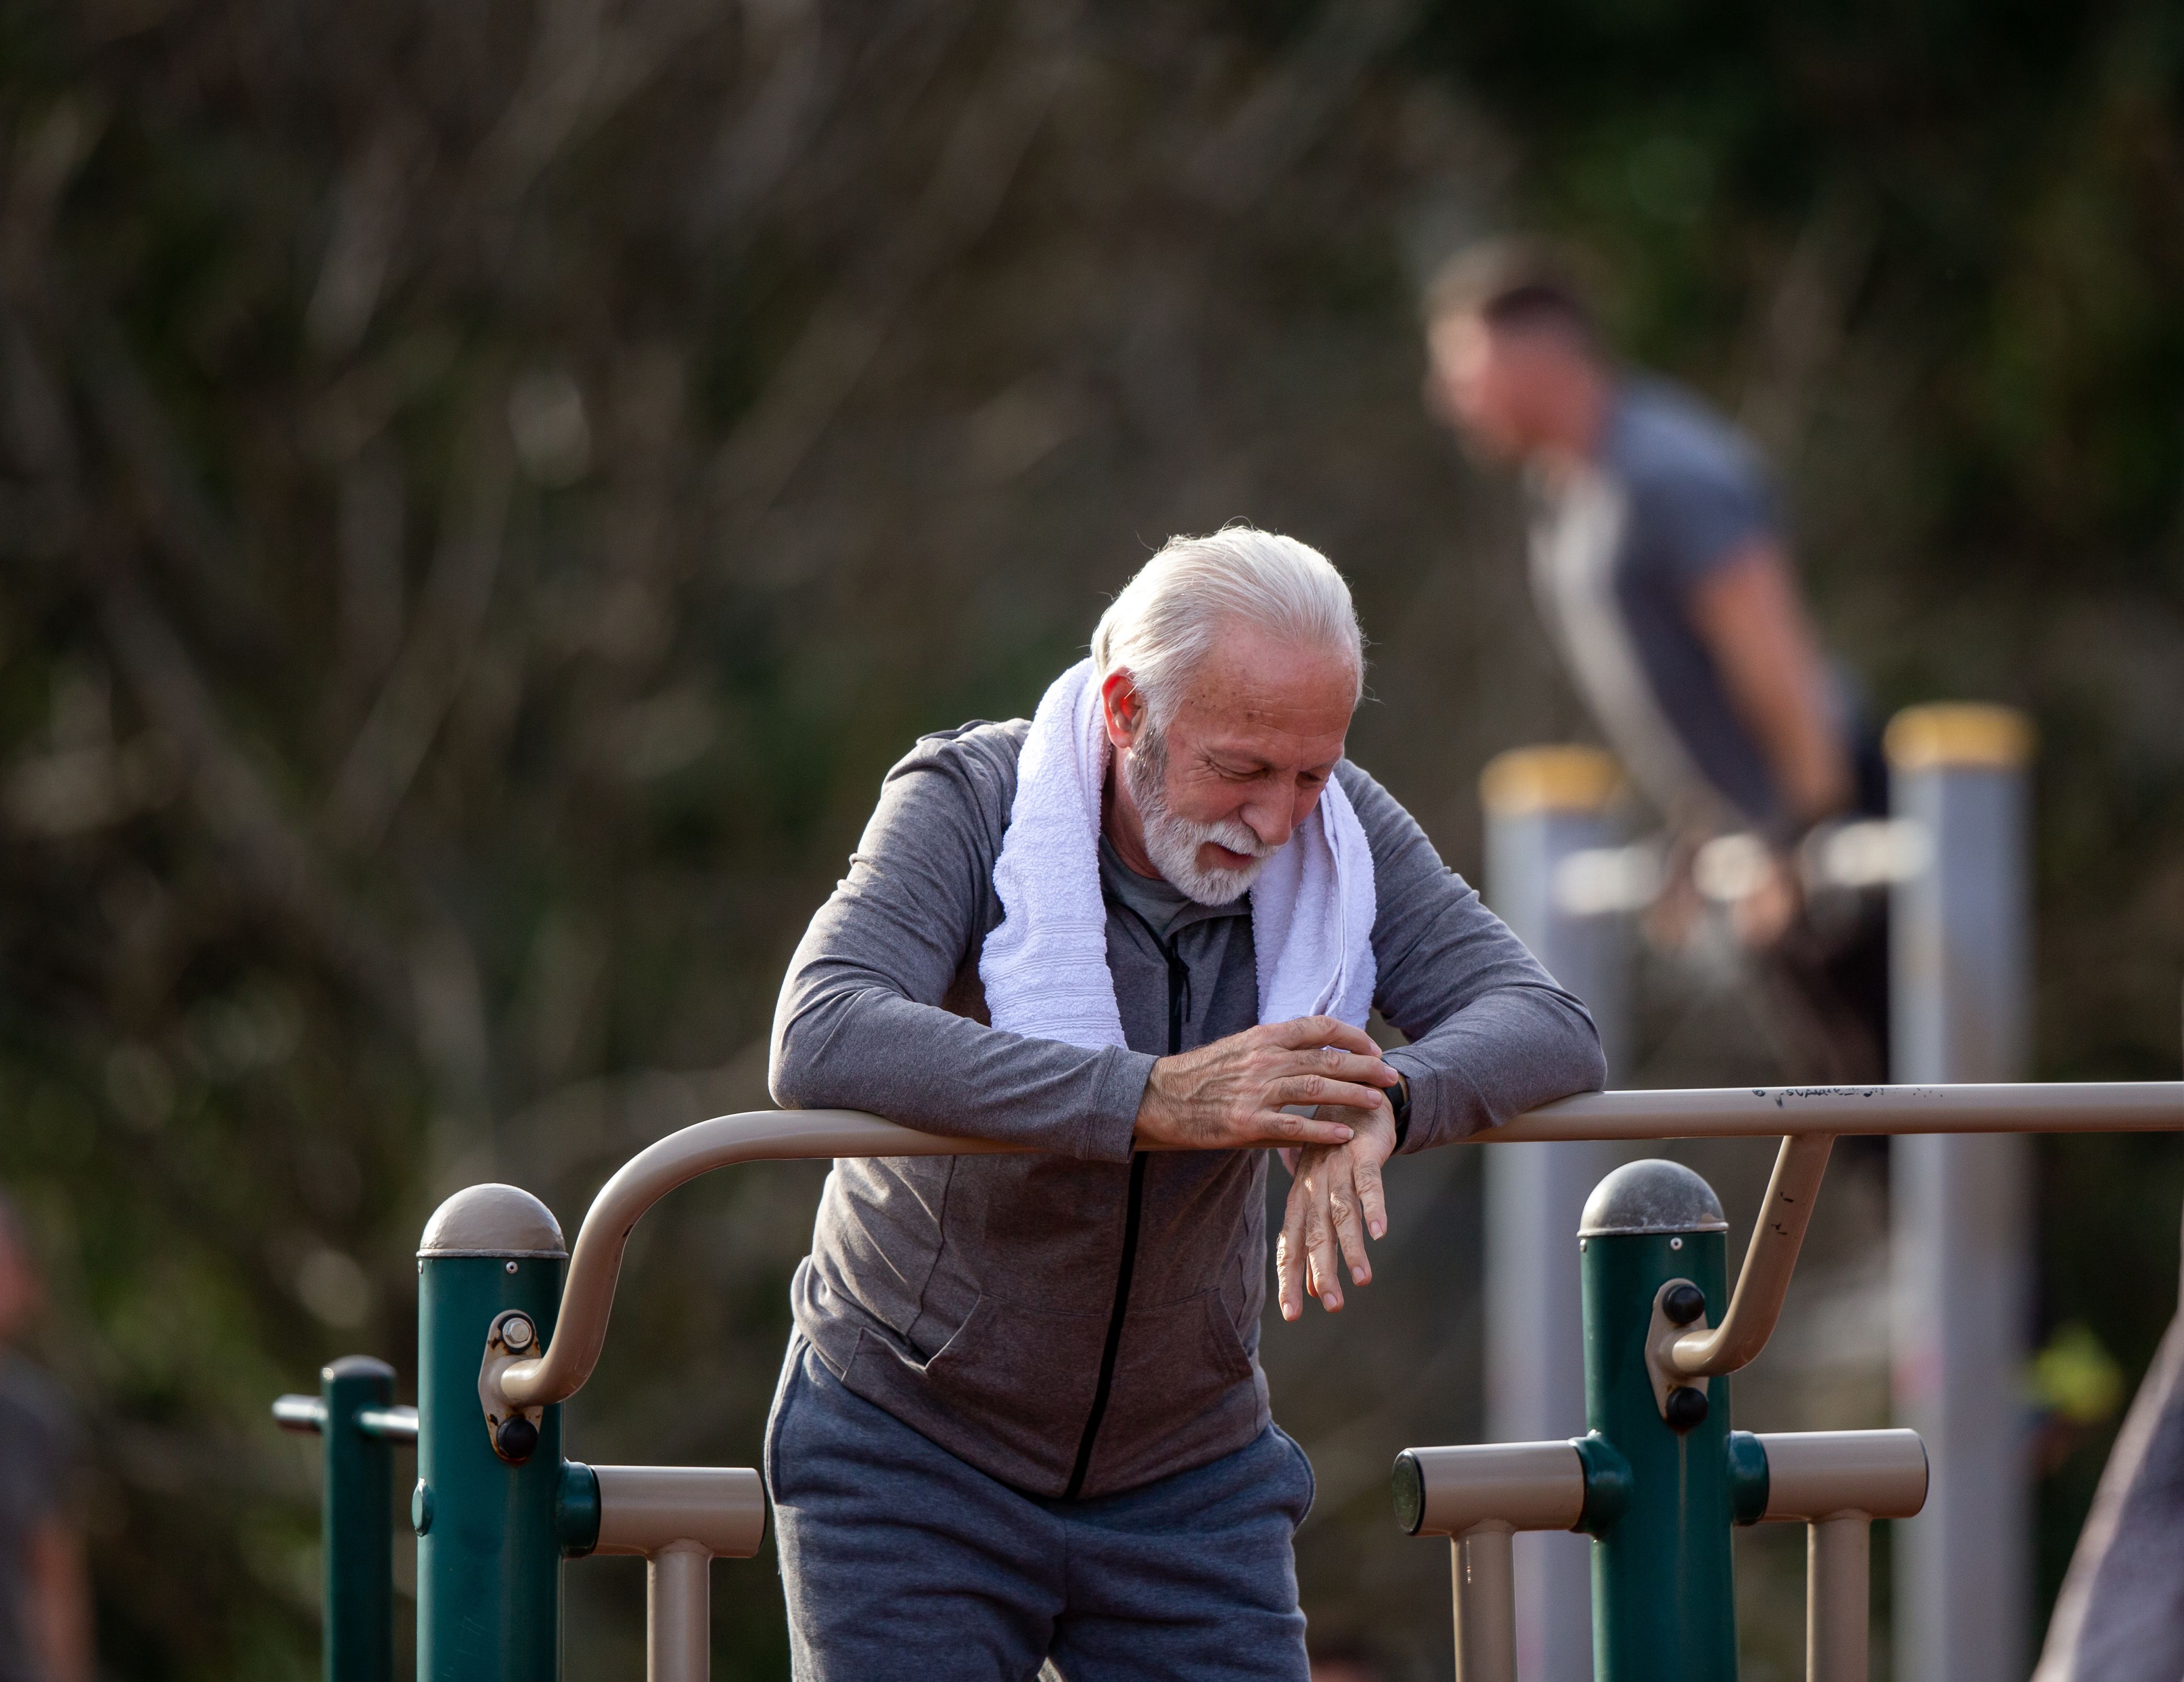 Las personas mayores en buena forma tienen menos probabilidades de sufrir deterioro cognitivo. Foto: Bigstock